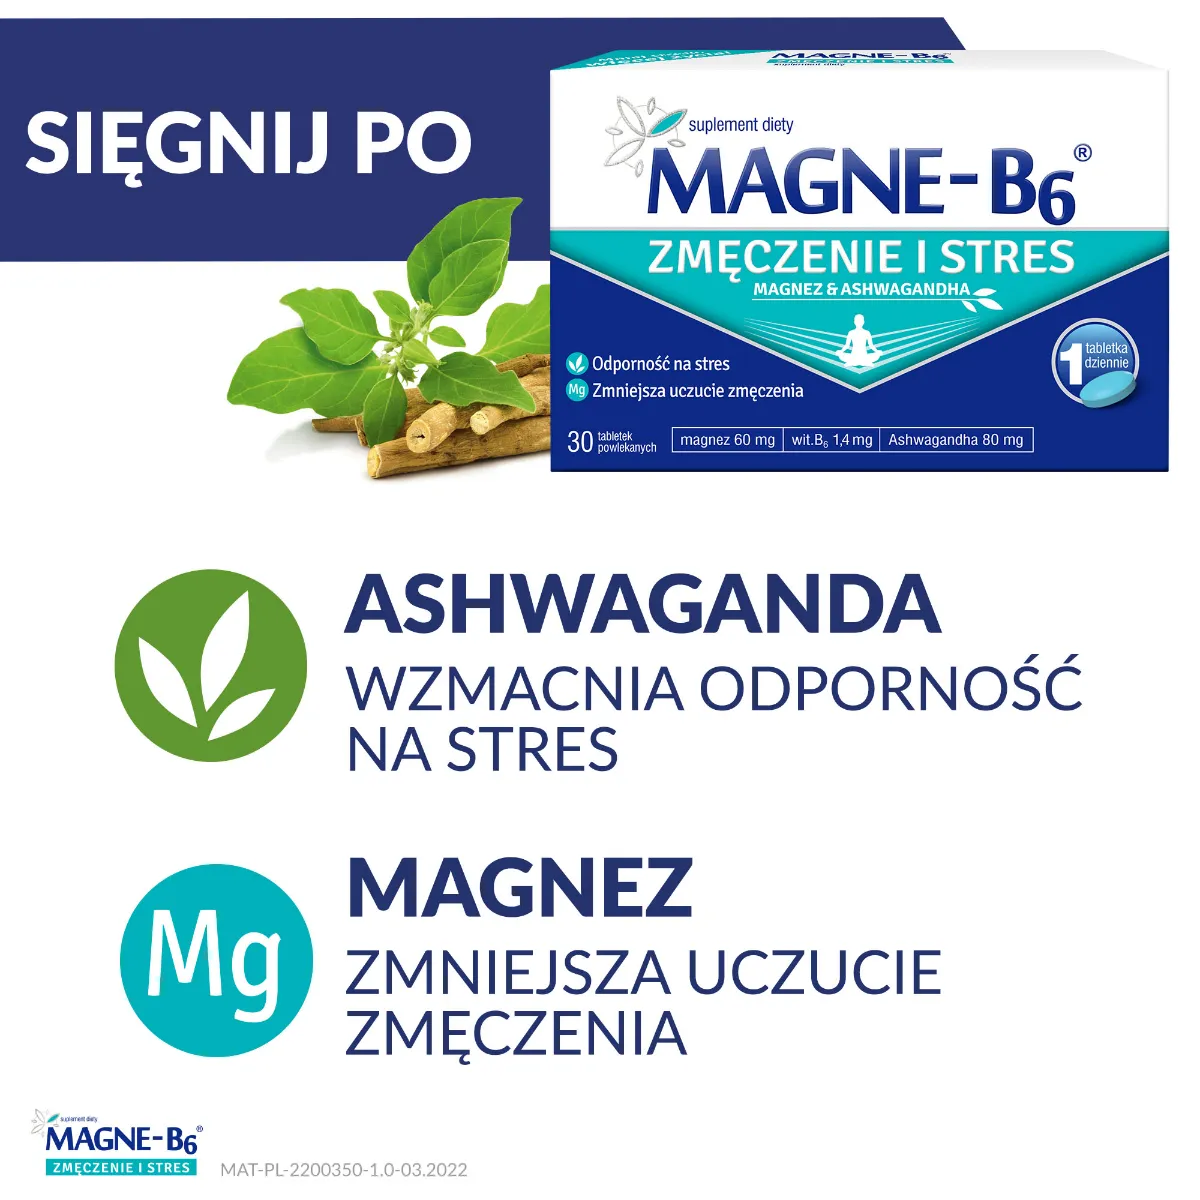 Magne-B6 Zmęczenie i Stres, suplement diety, 30 tabletek powlekanych 